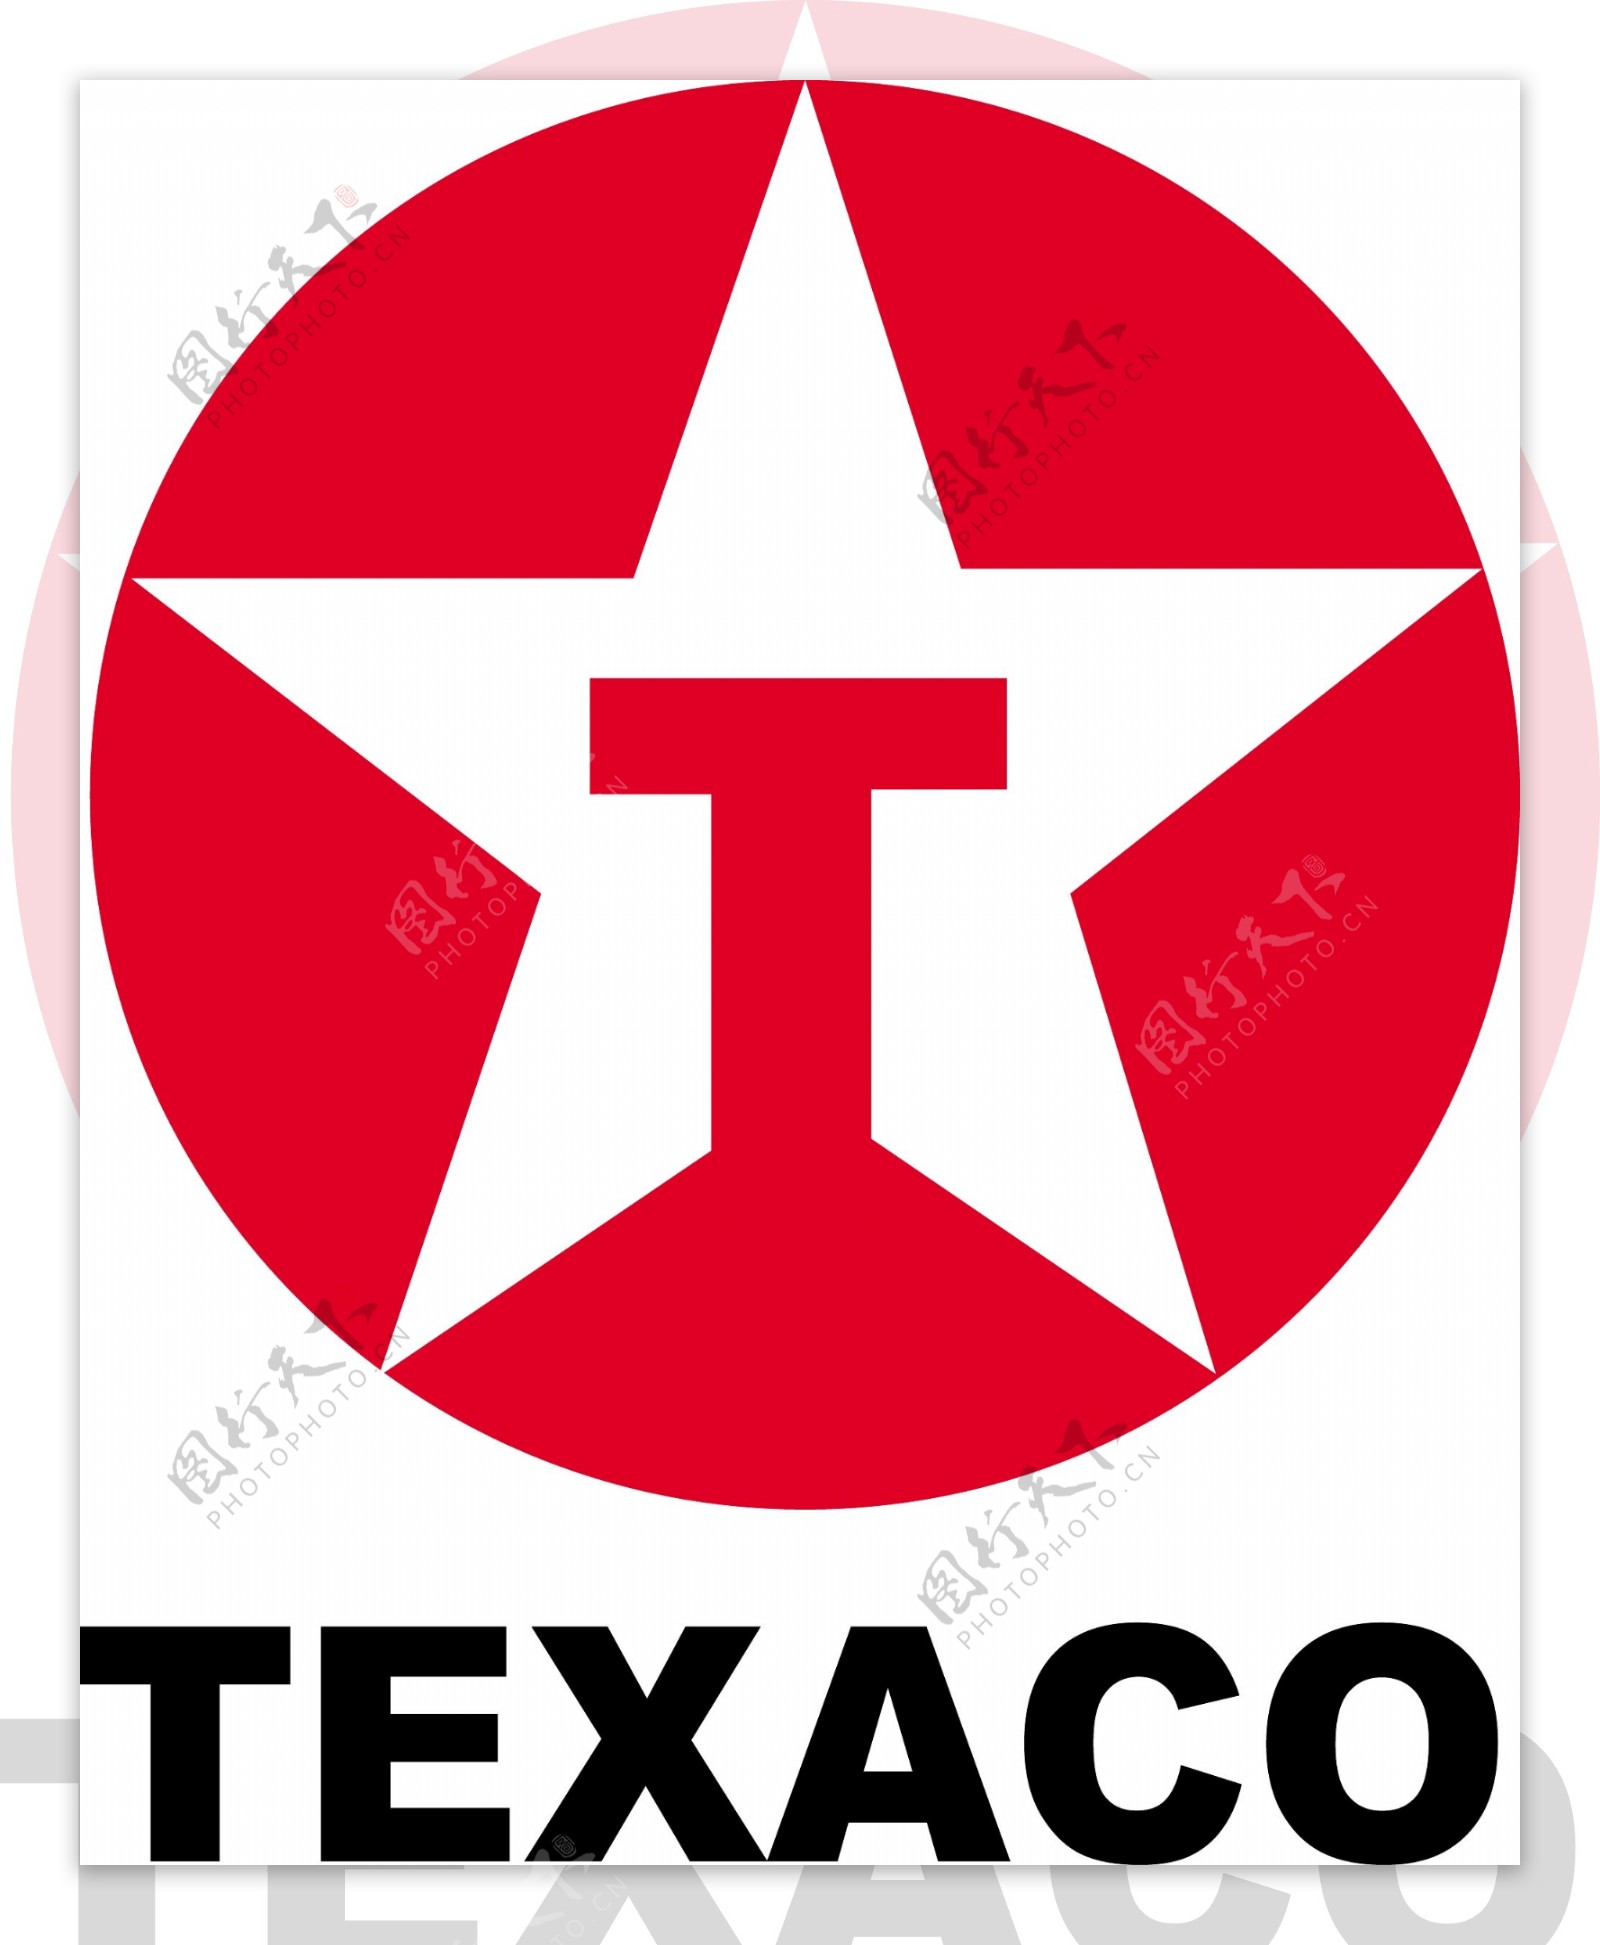 TEXACo石油标志图片